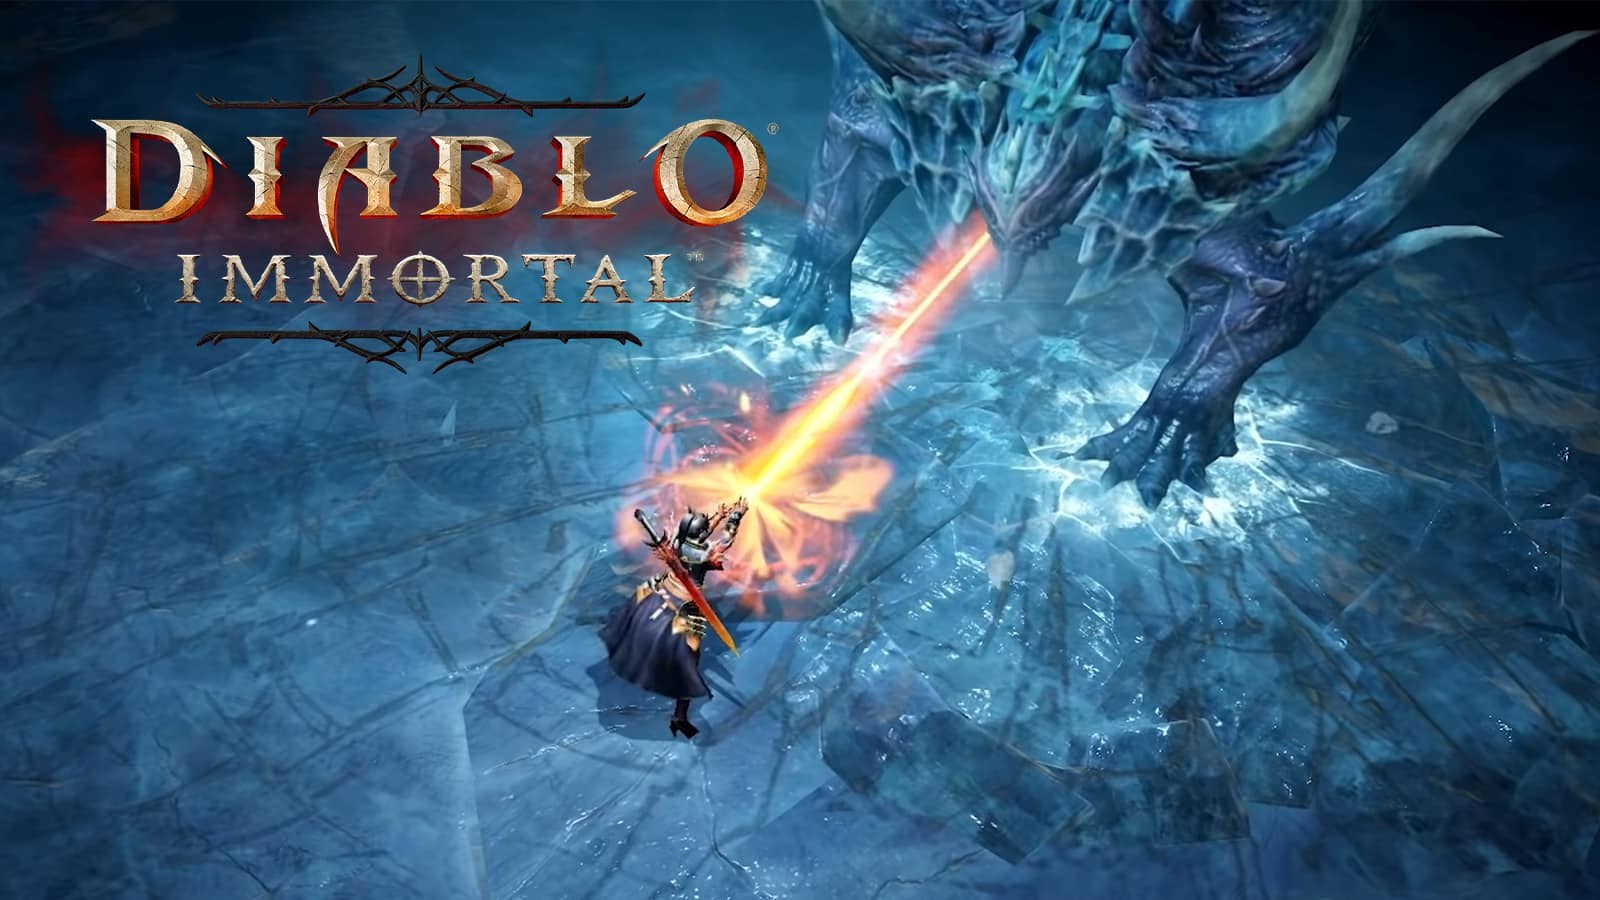 Diablo Immortal hat in zwei Wochen 24 Millionen US-Dollar durch In-Game-Käufe verdient